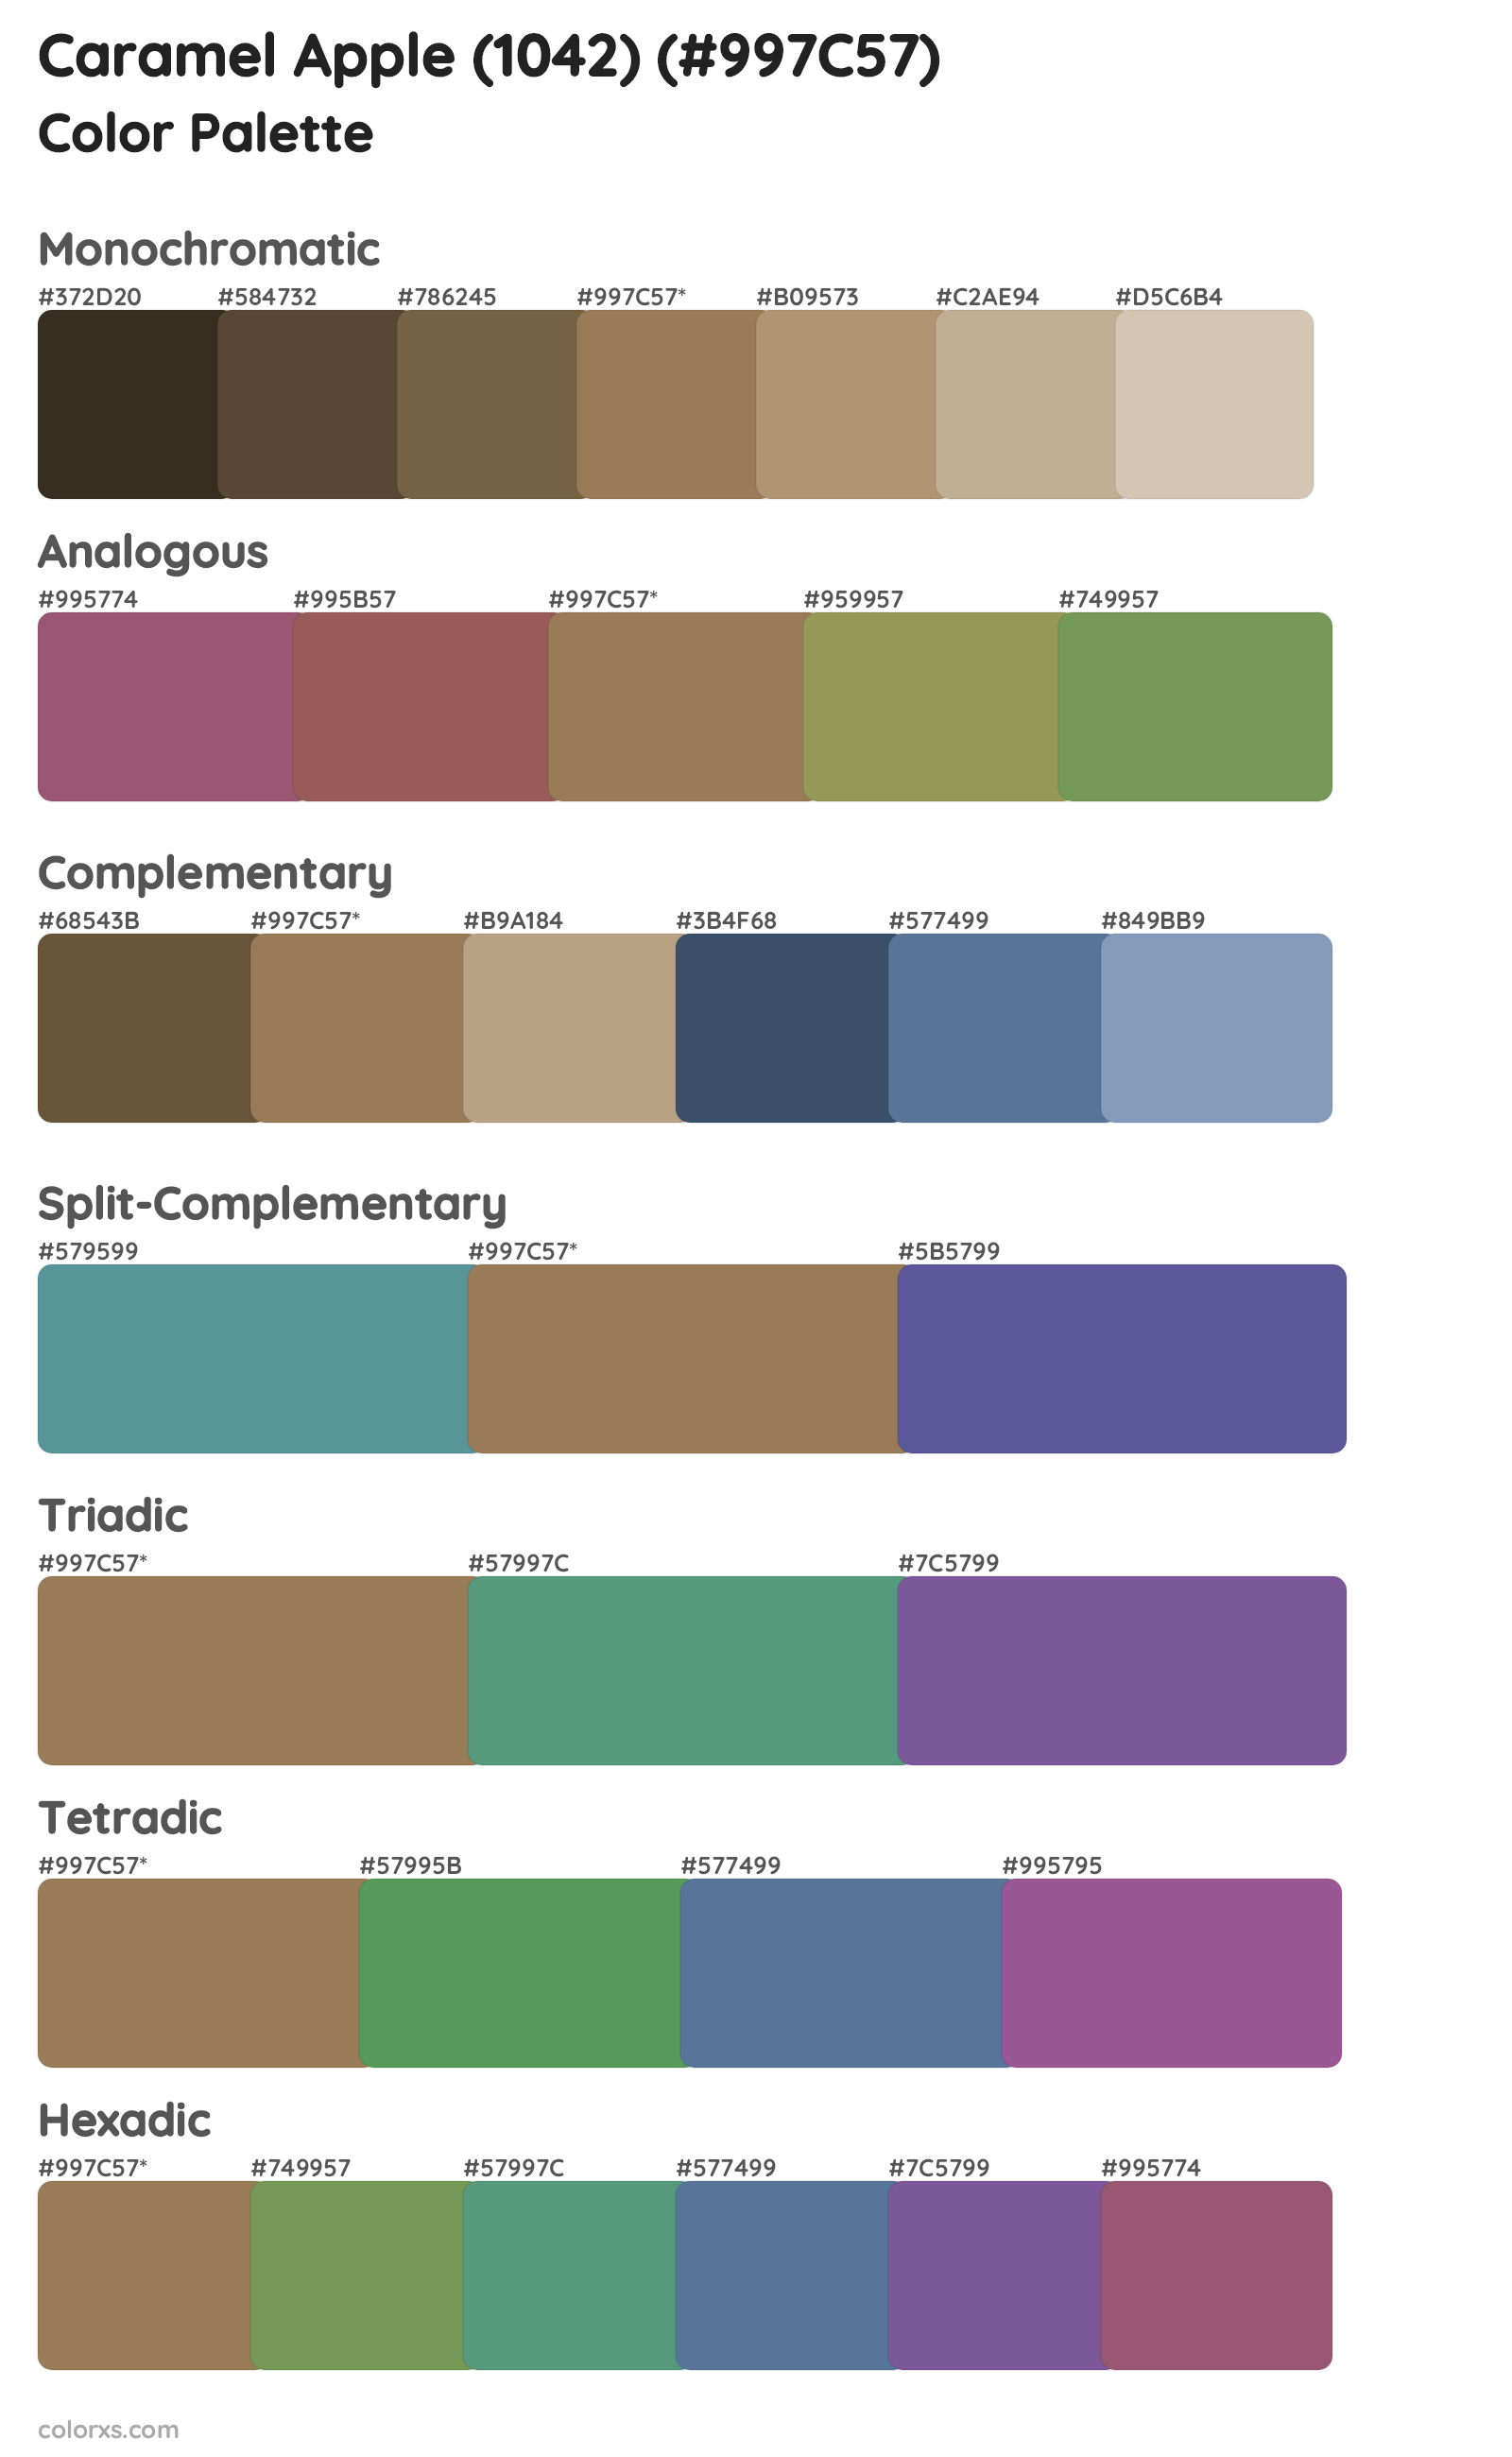 Caramel Apple (1042) Color Scheme Palettes